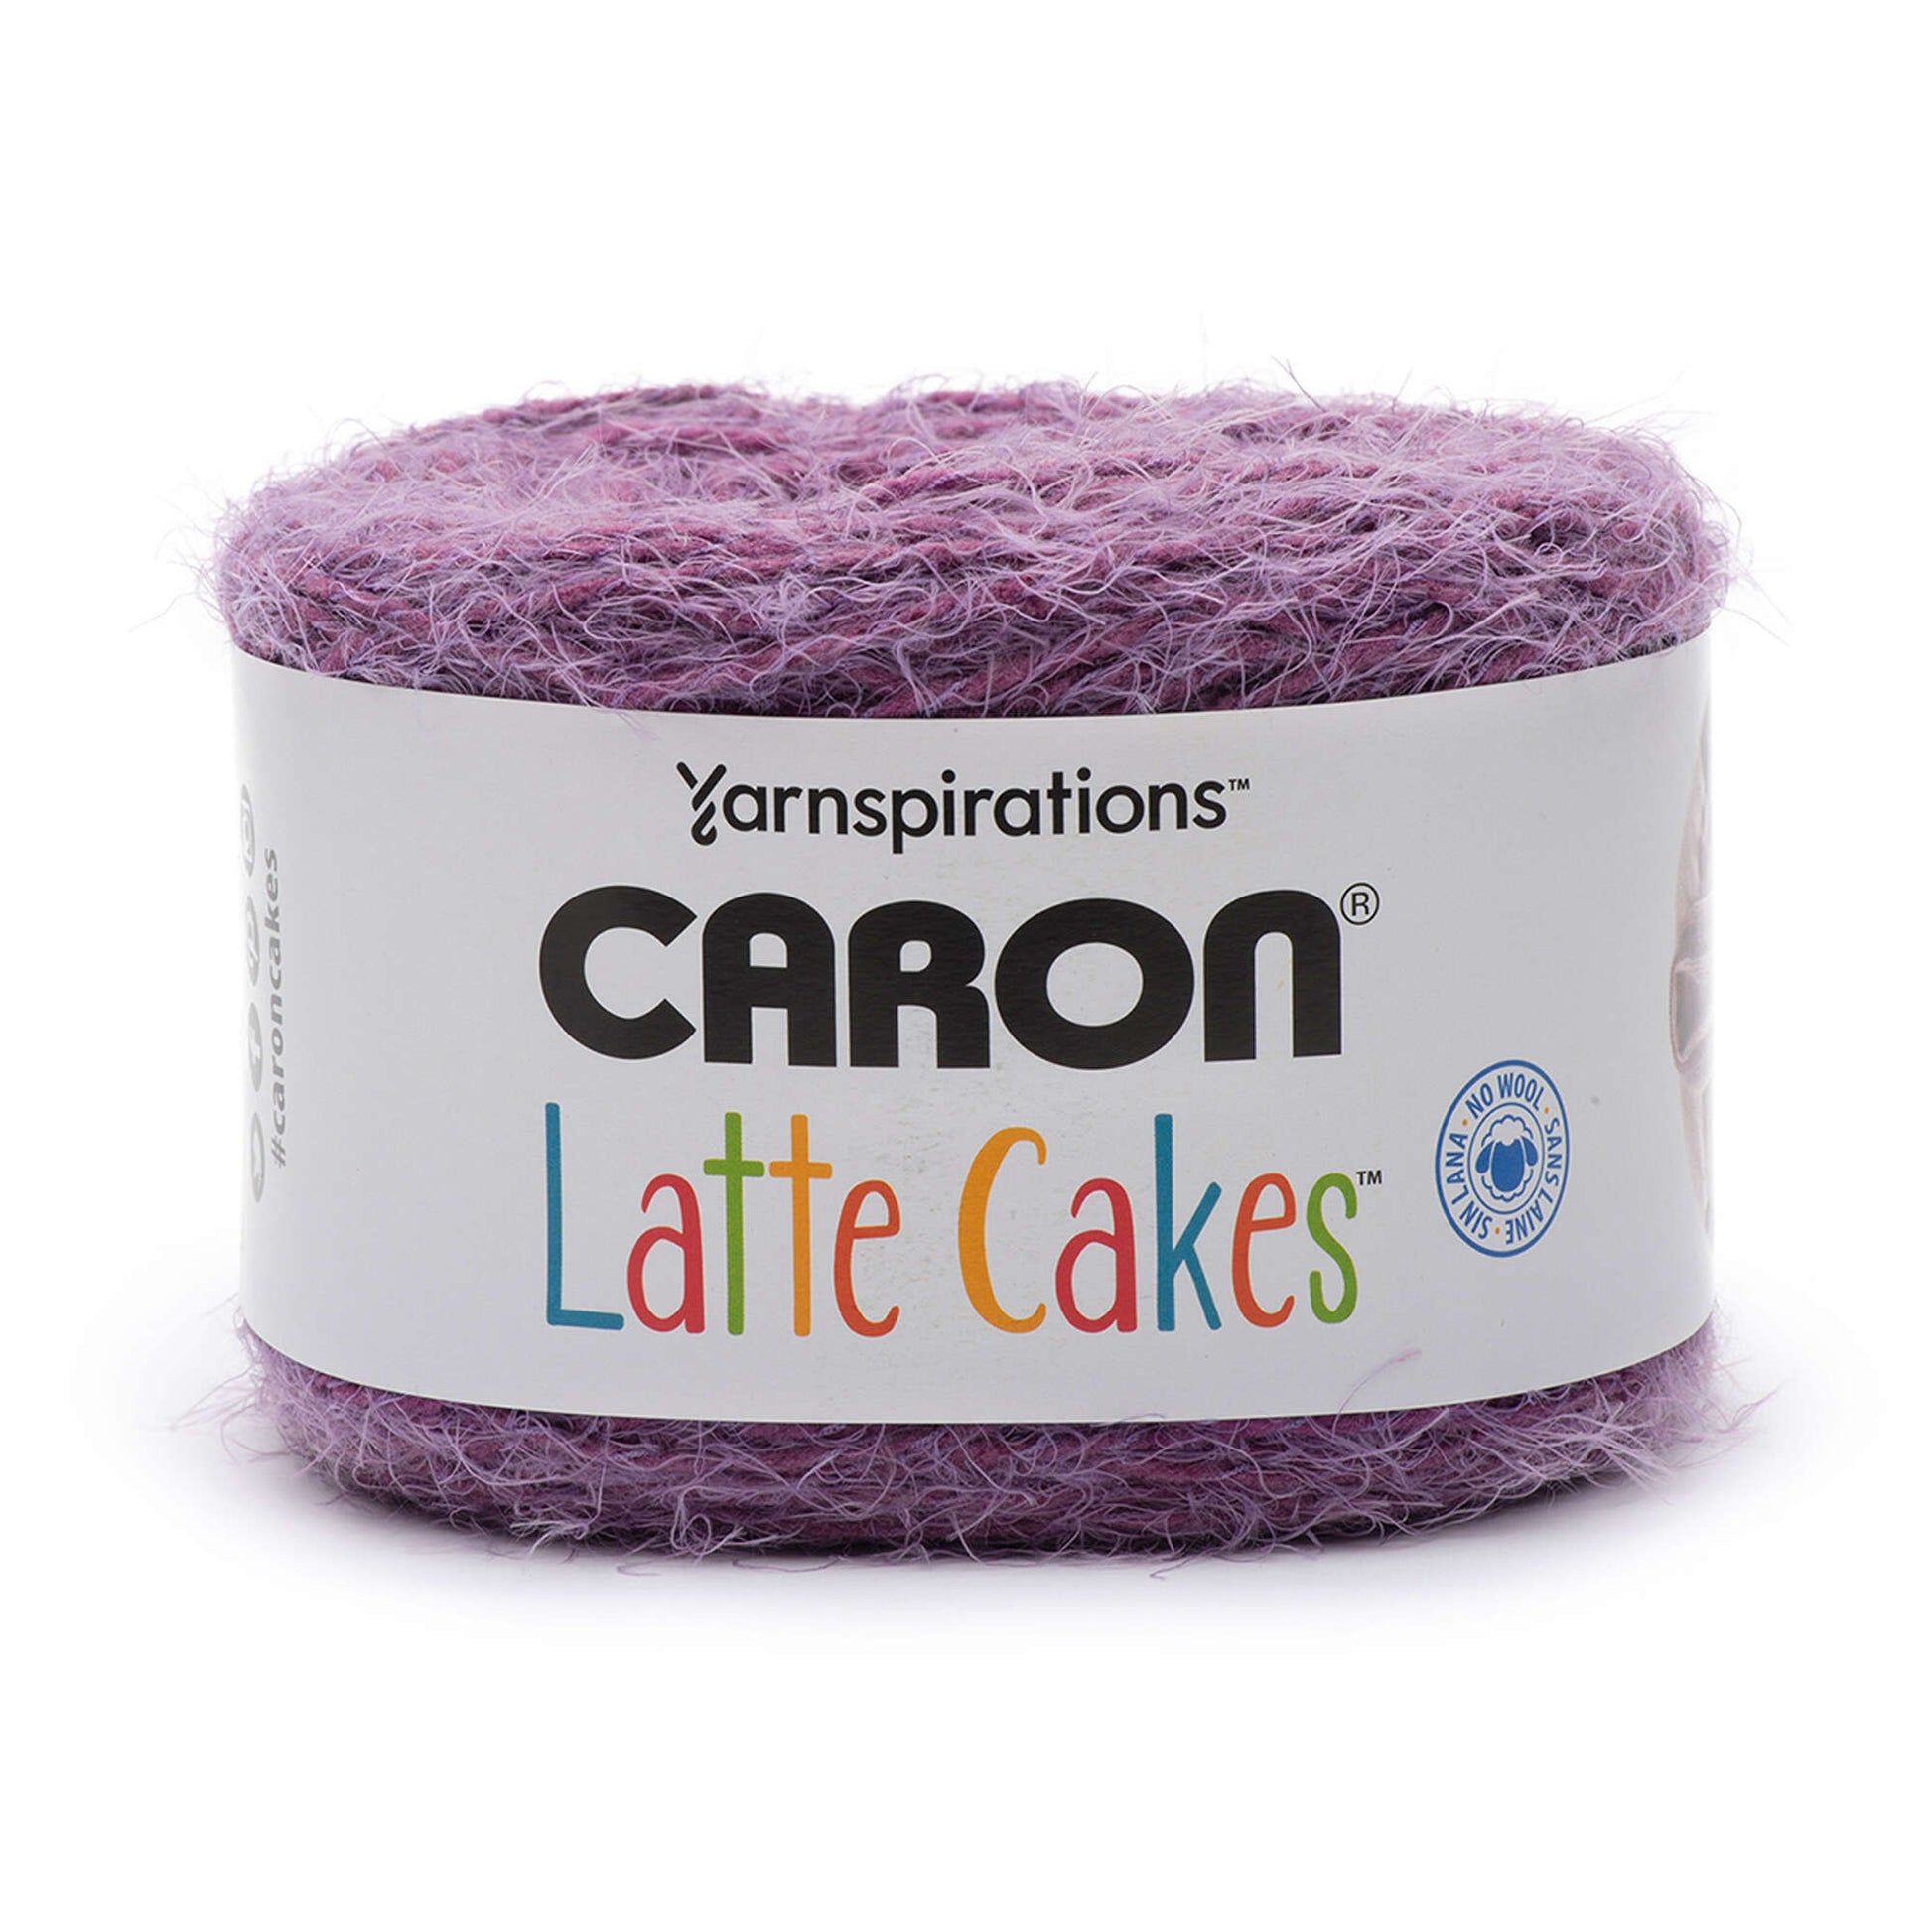 Caron® Cakes™ Yarn